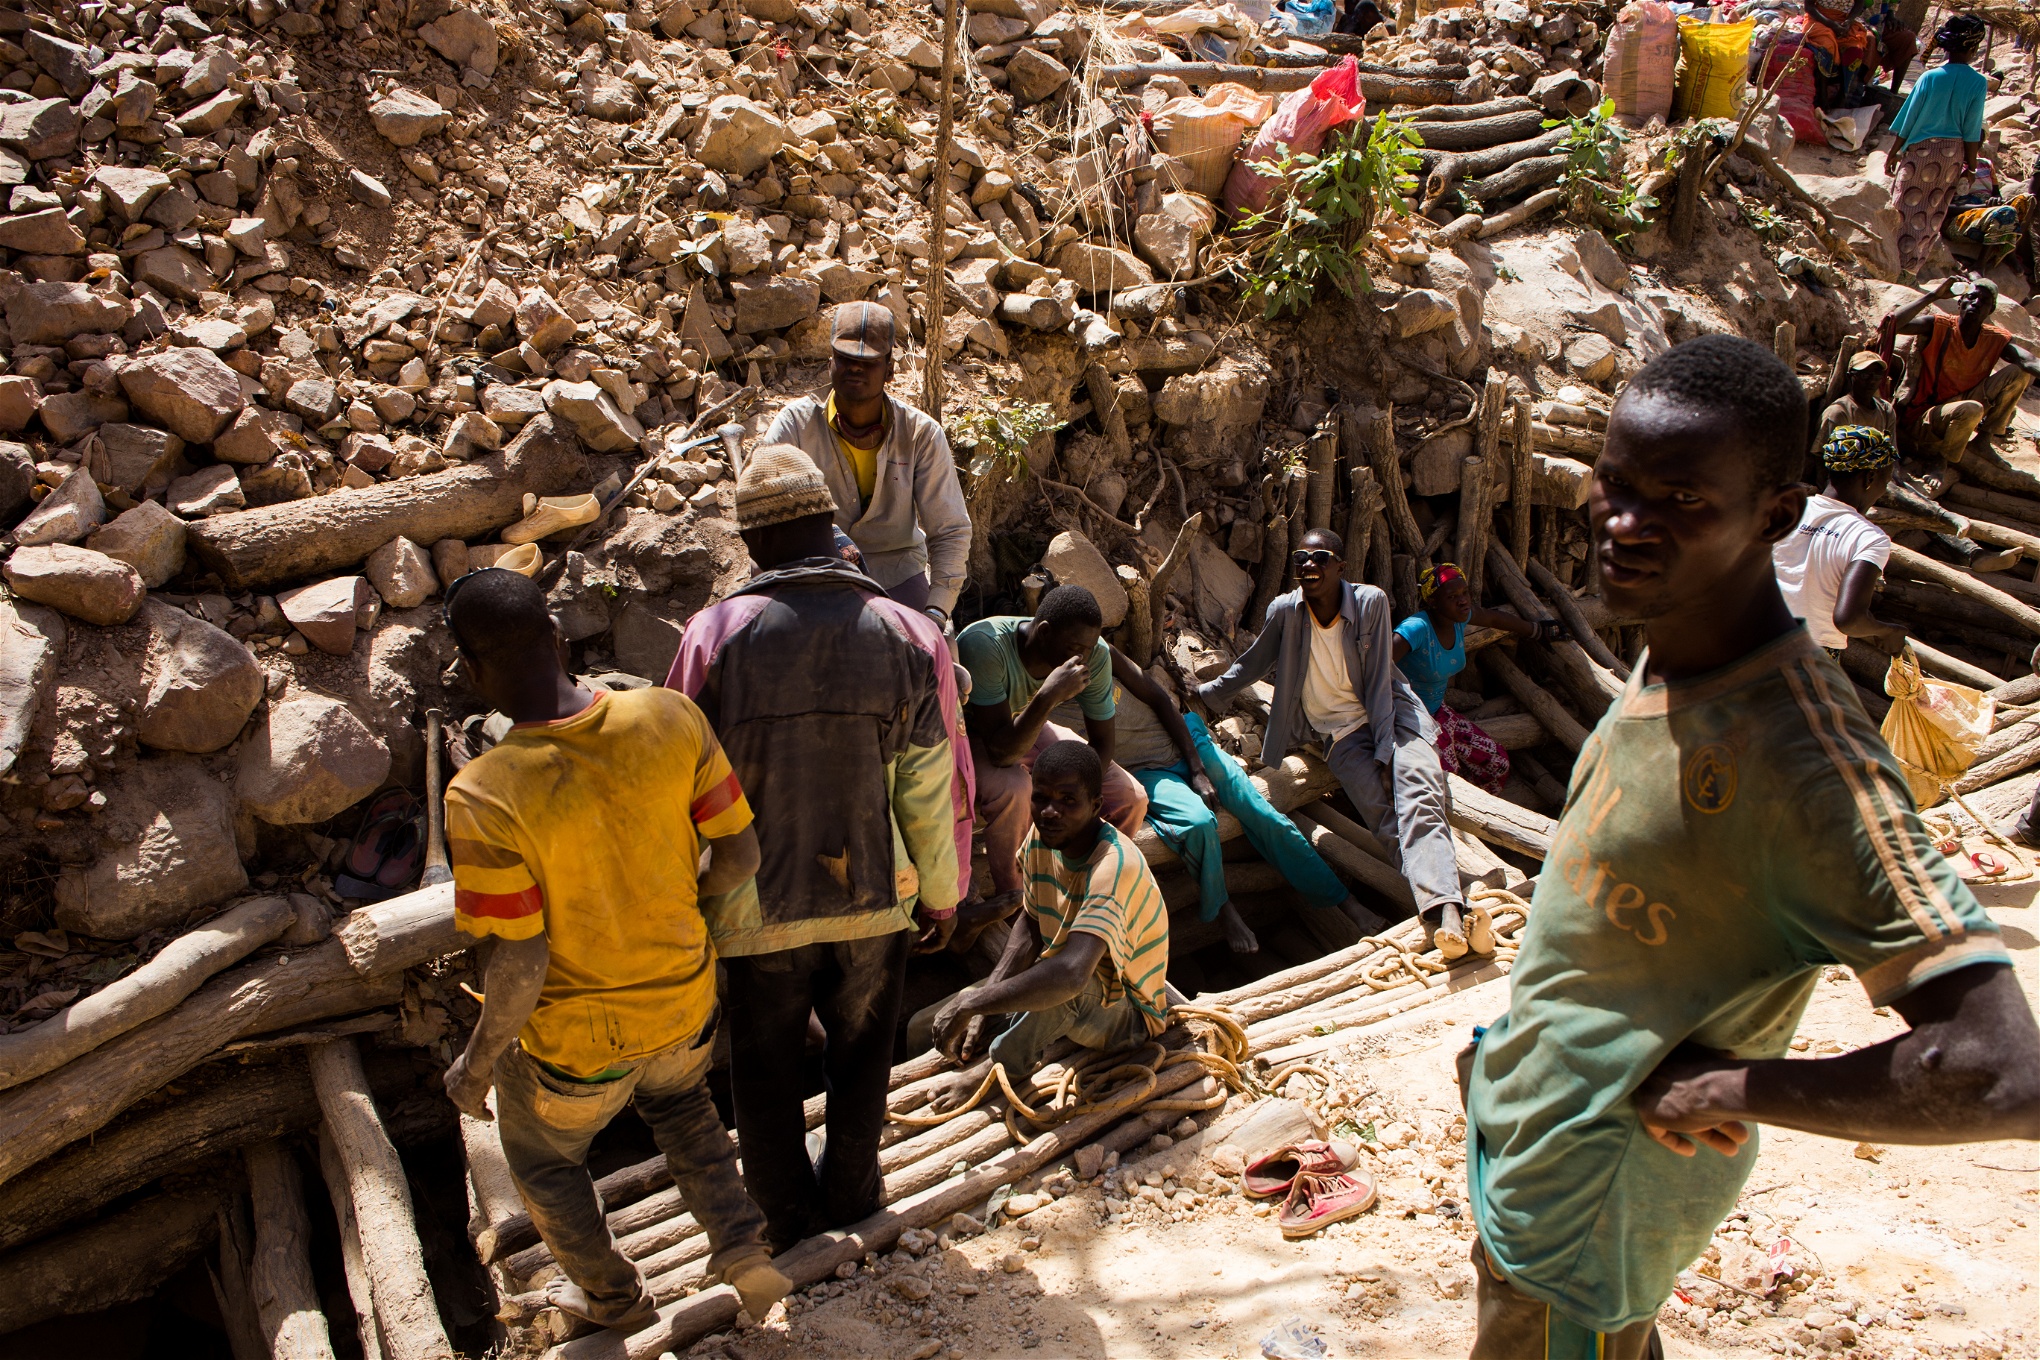 Ingen leder guldgrävararbetet utanför Kéniéba – alla gräver på eget initiativ, vilket skapar en kaotisk situation. 
